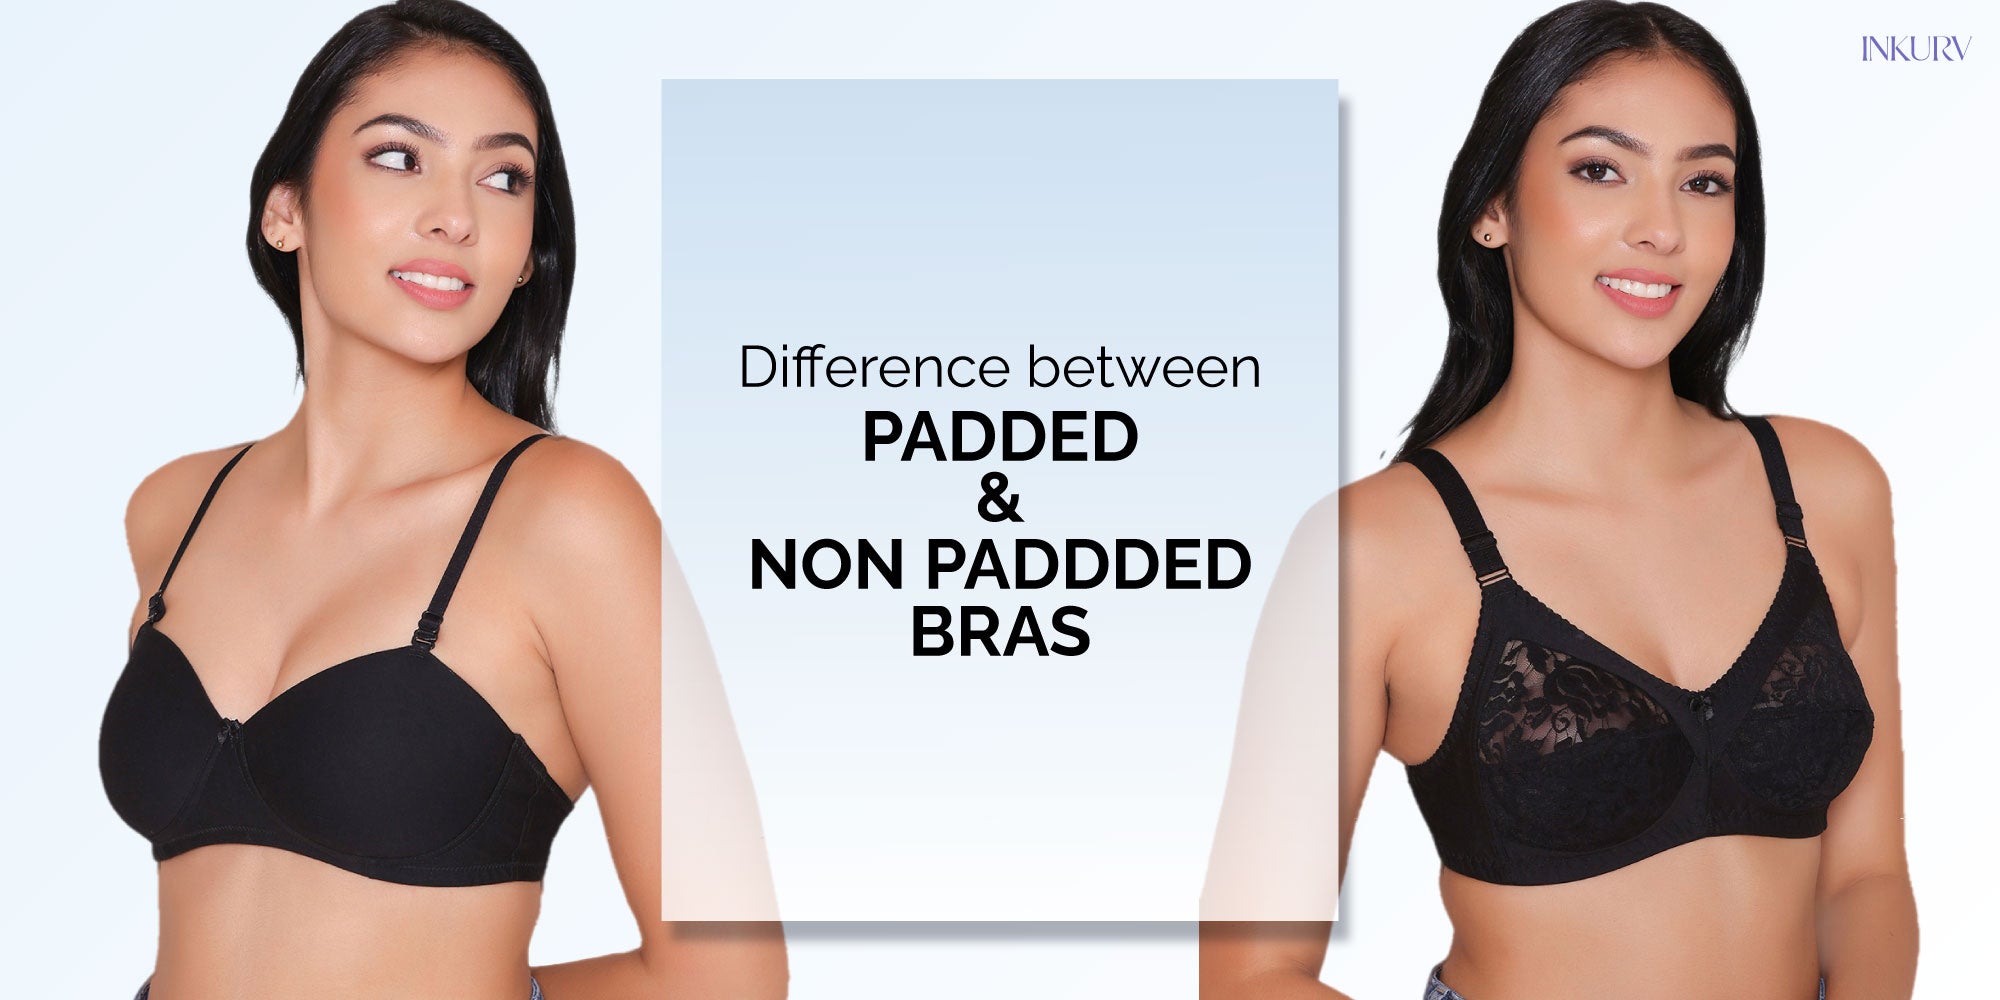 regular bra combo normal cotton bra for regular use non padded for